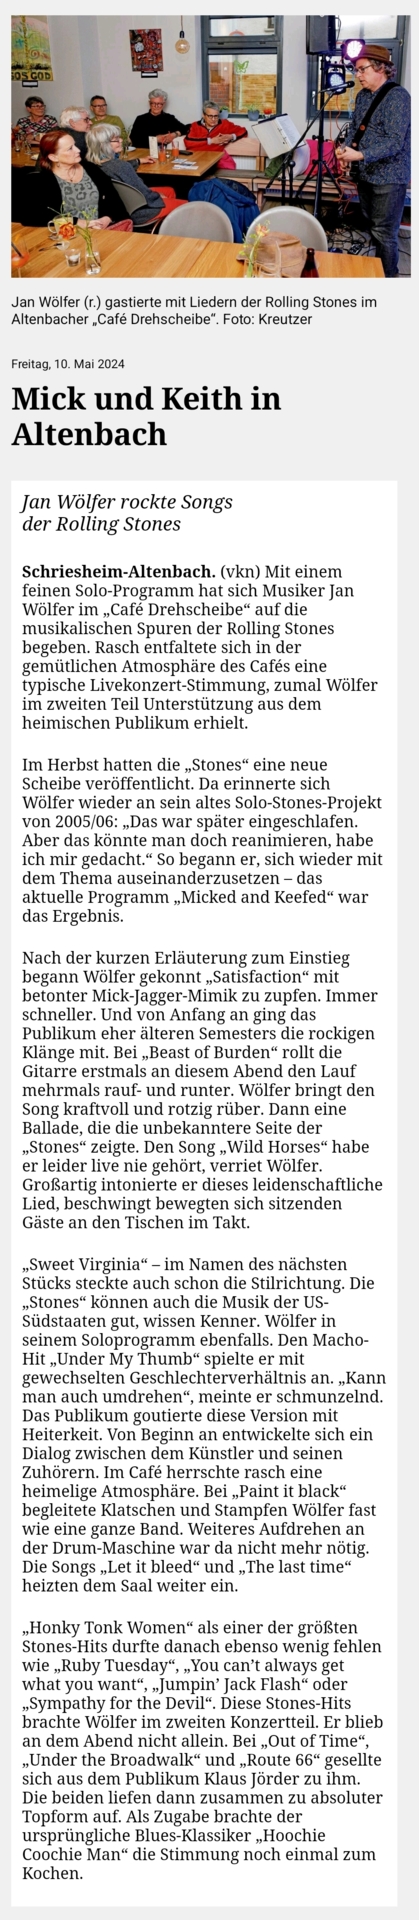 Bericht aus der Rhein-Neckar-Zeitung